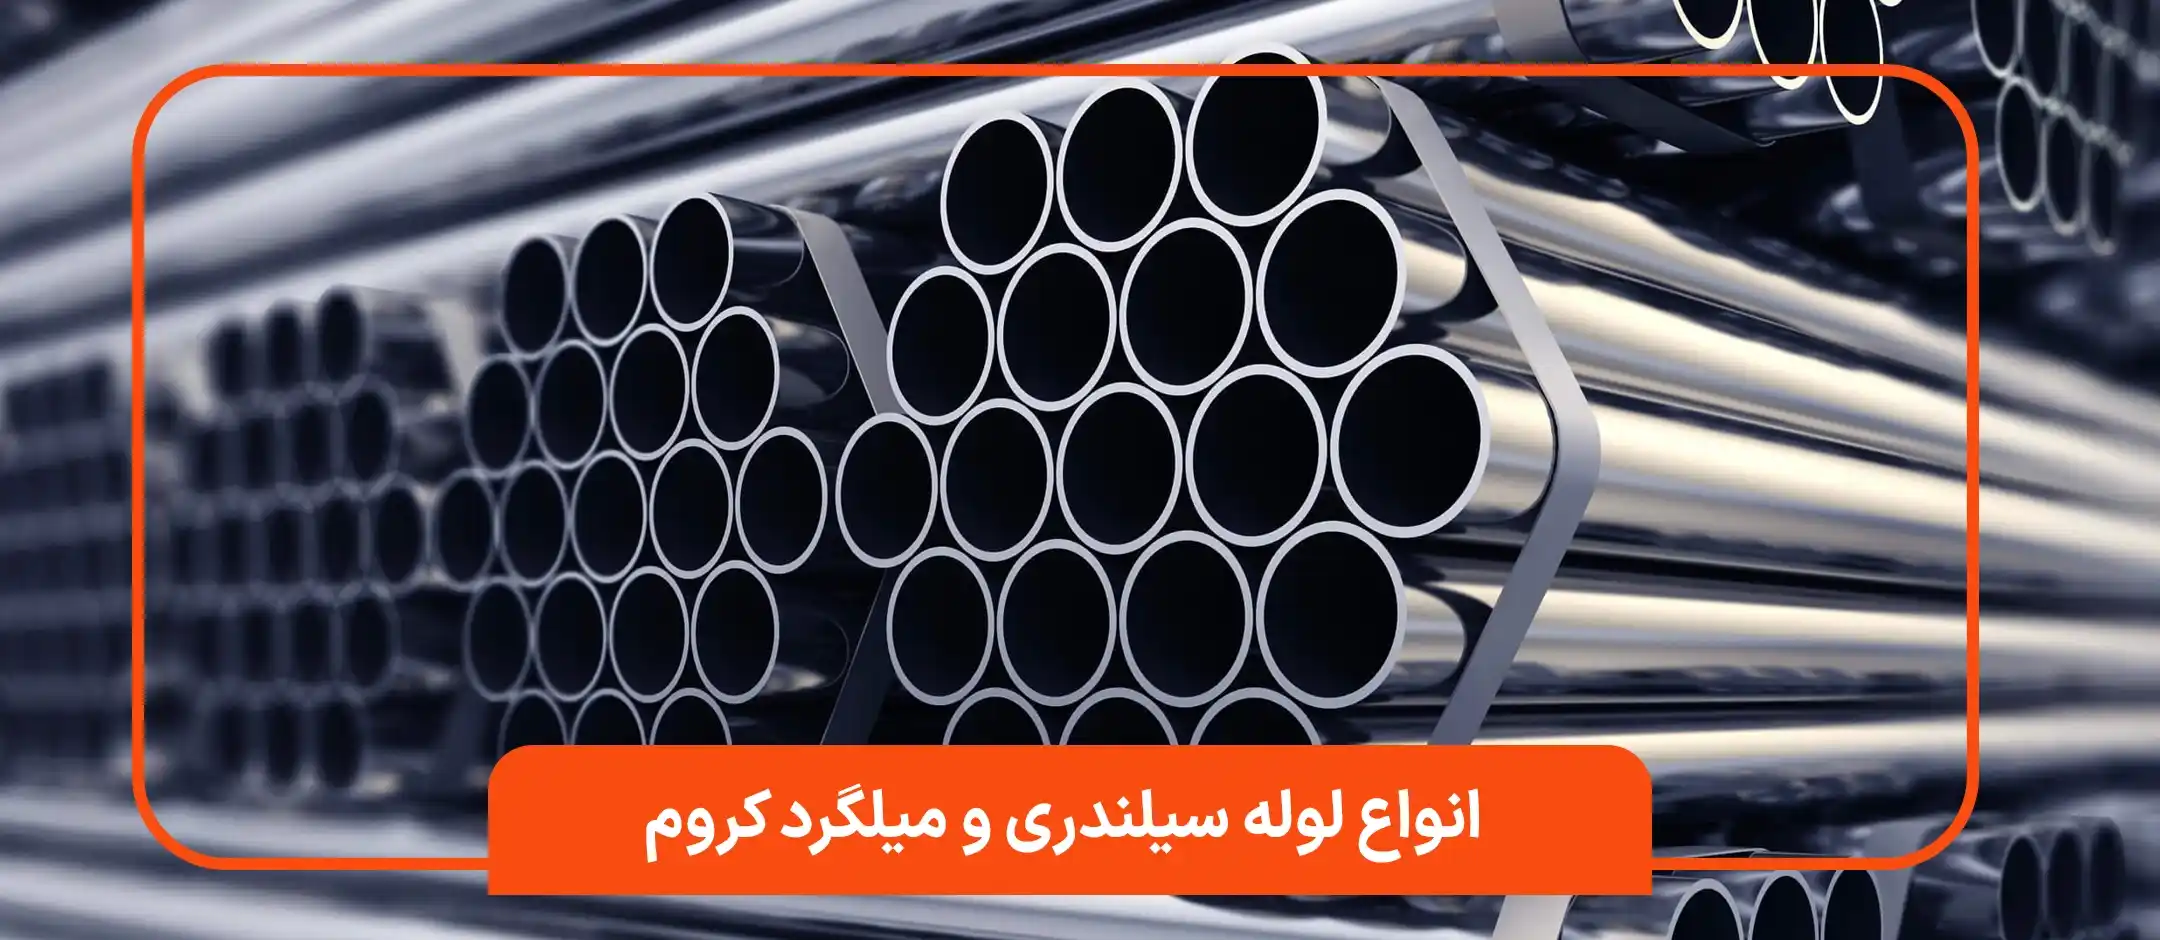 انواع لوله سیلندری و میلگرد کروم شرکت فولاد یگانه تهران